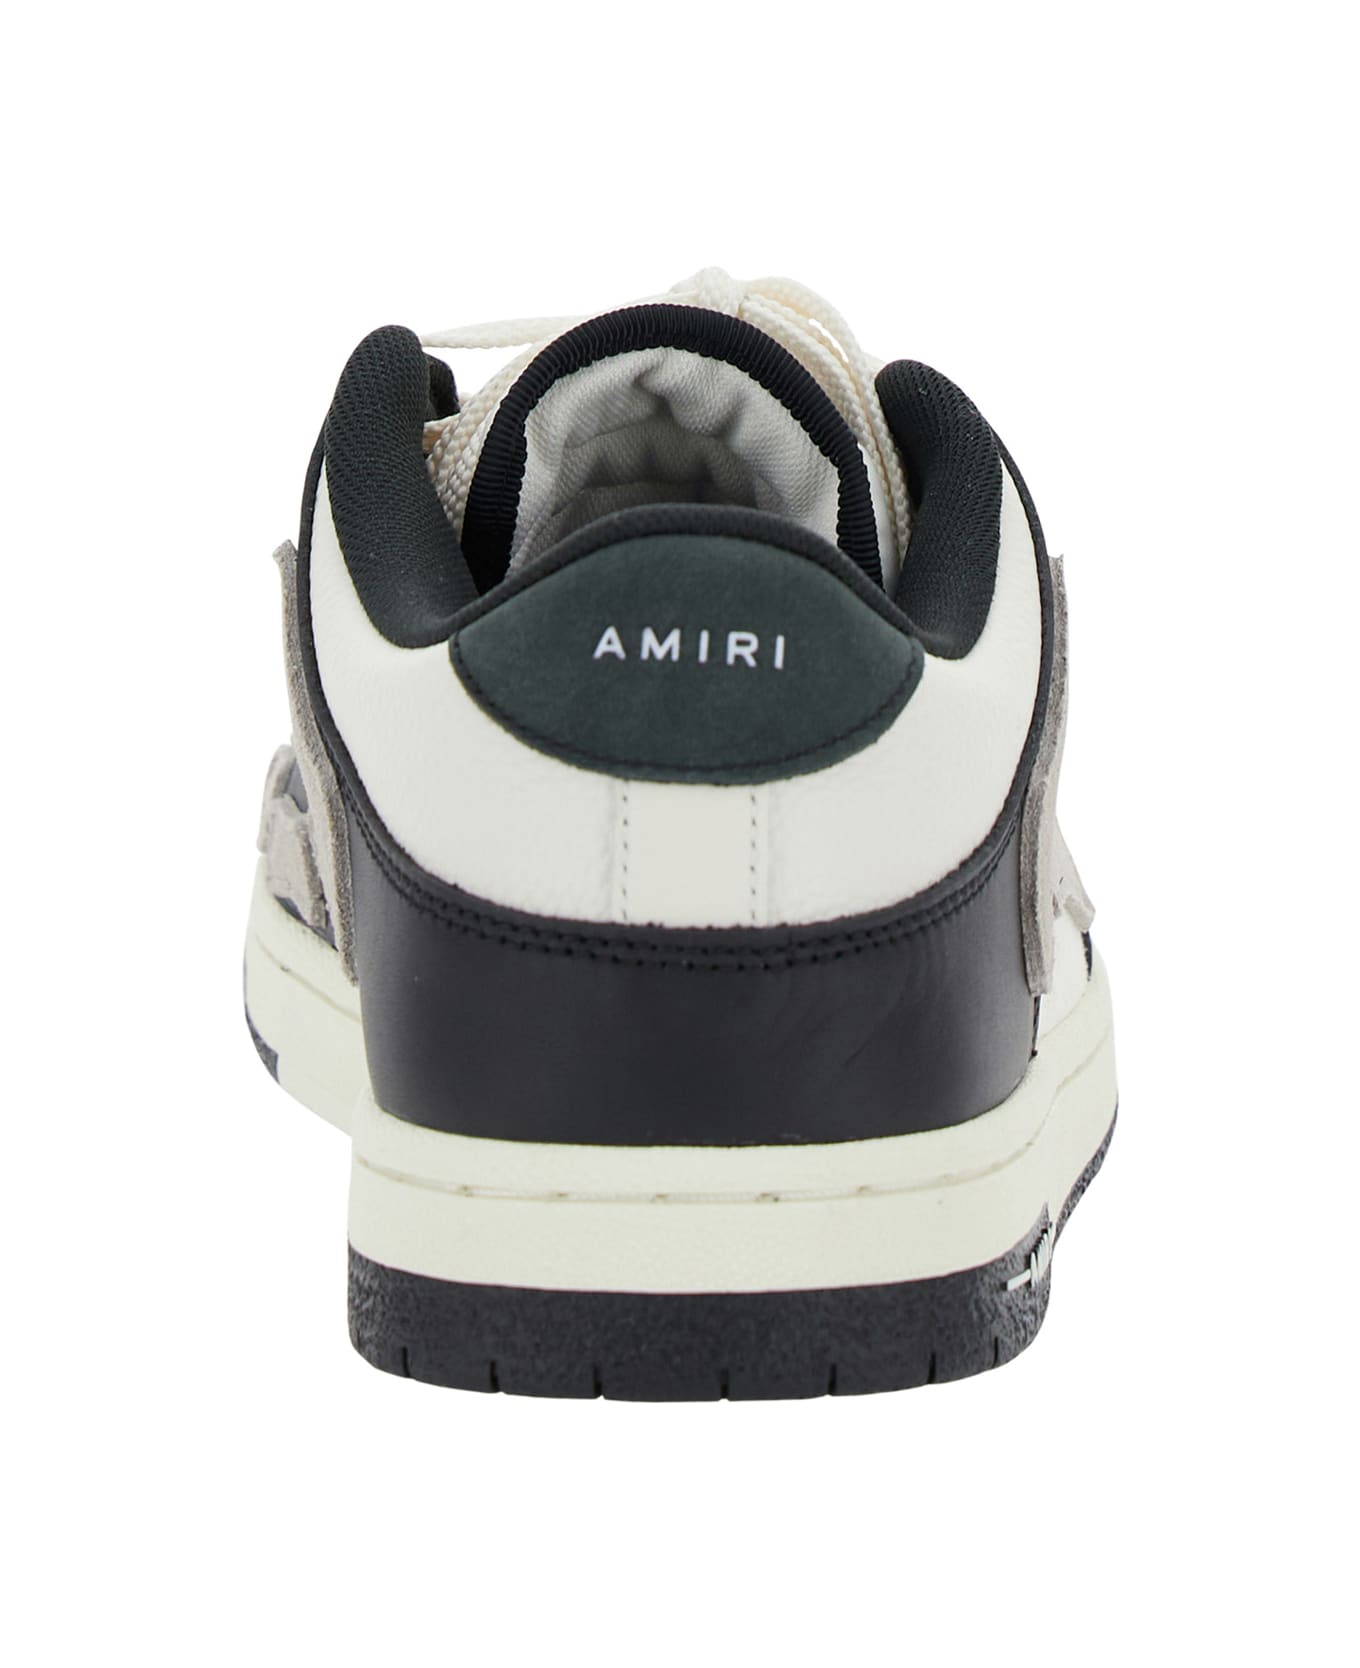 AMIRI Skel Top Low - White/black